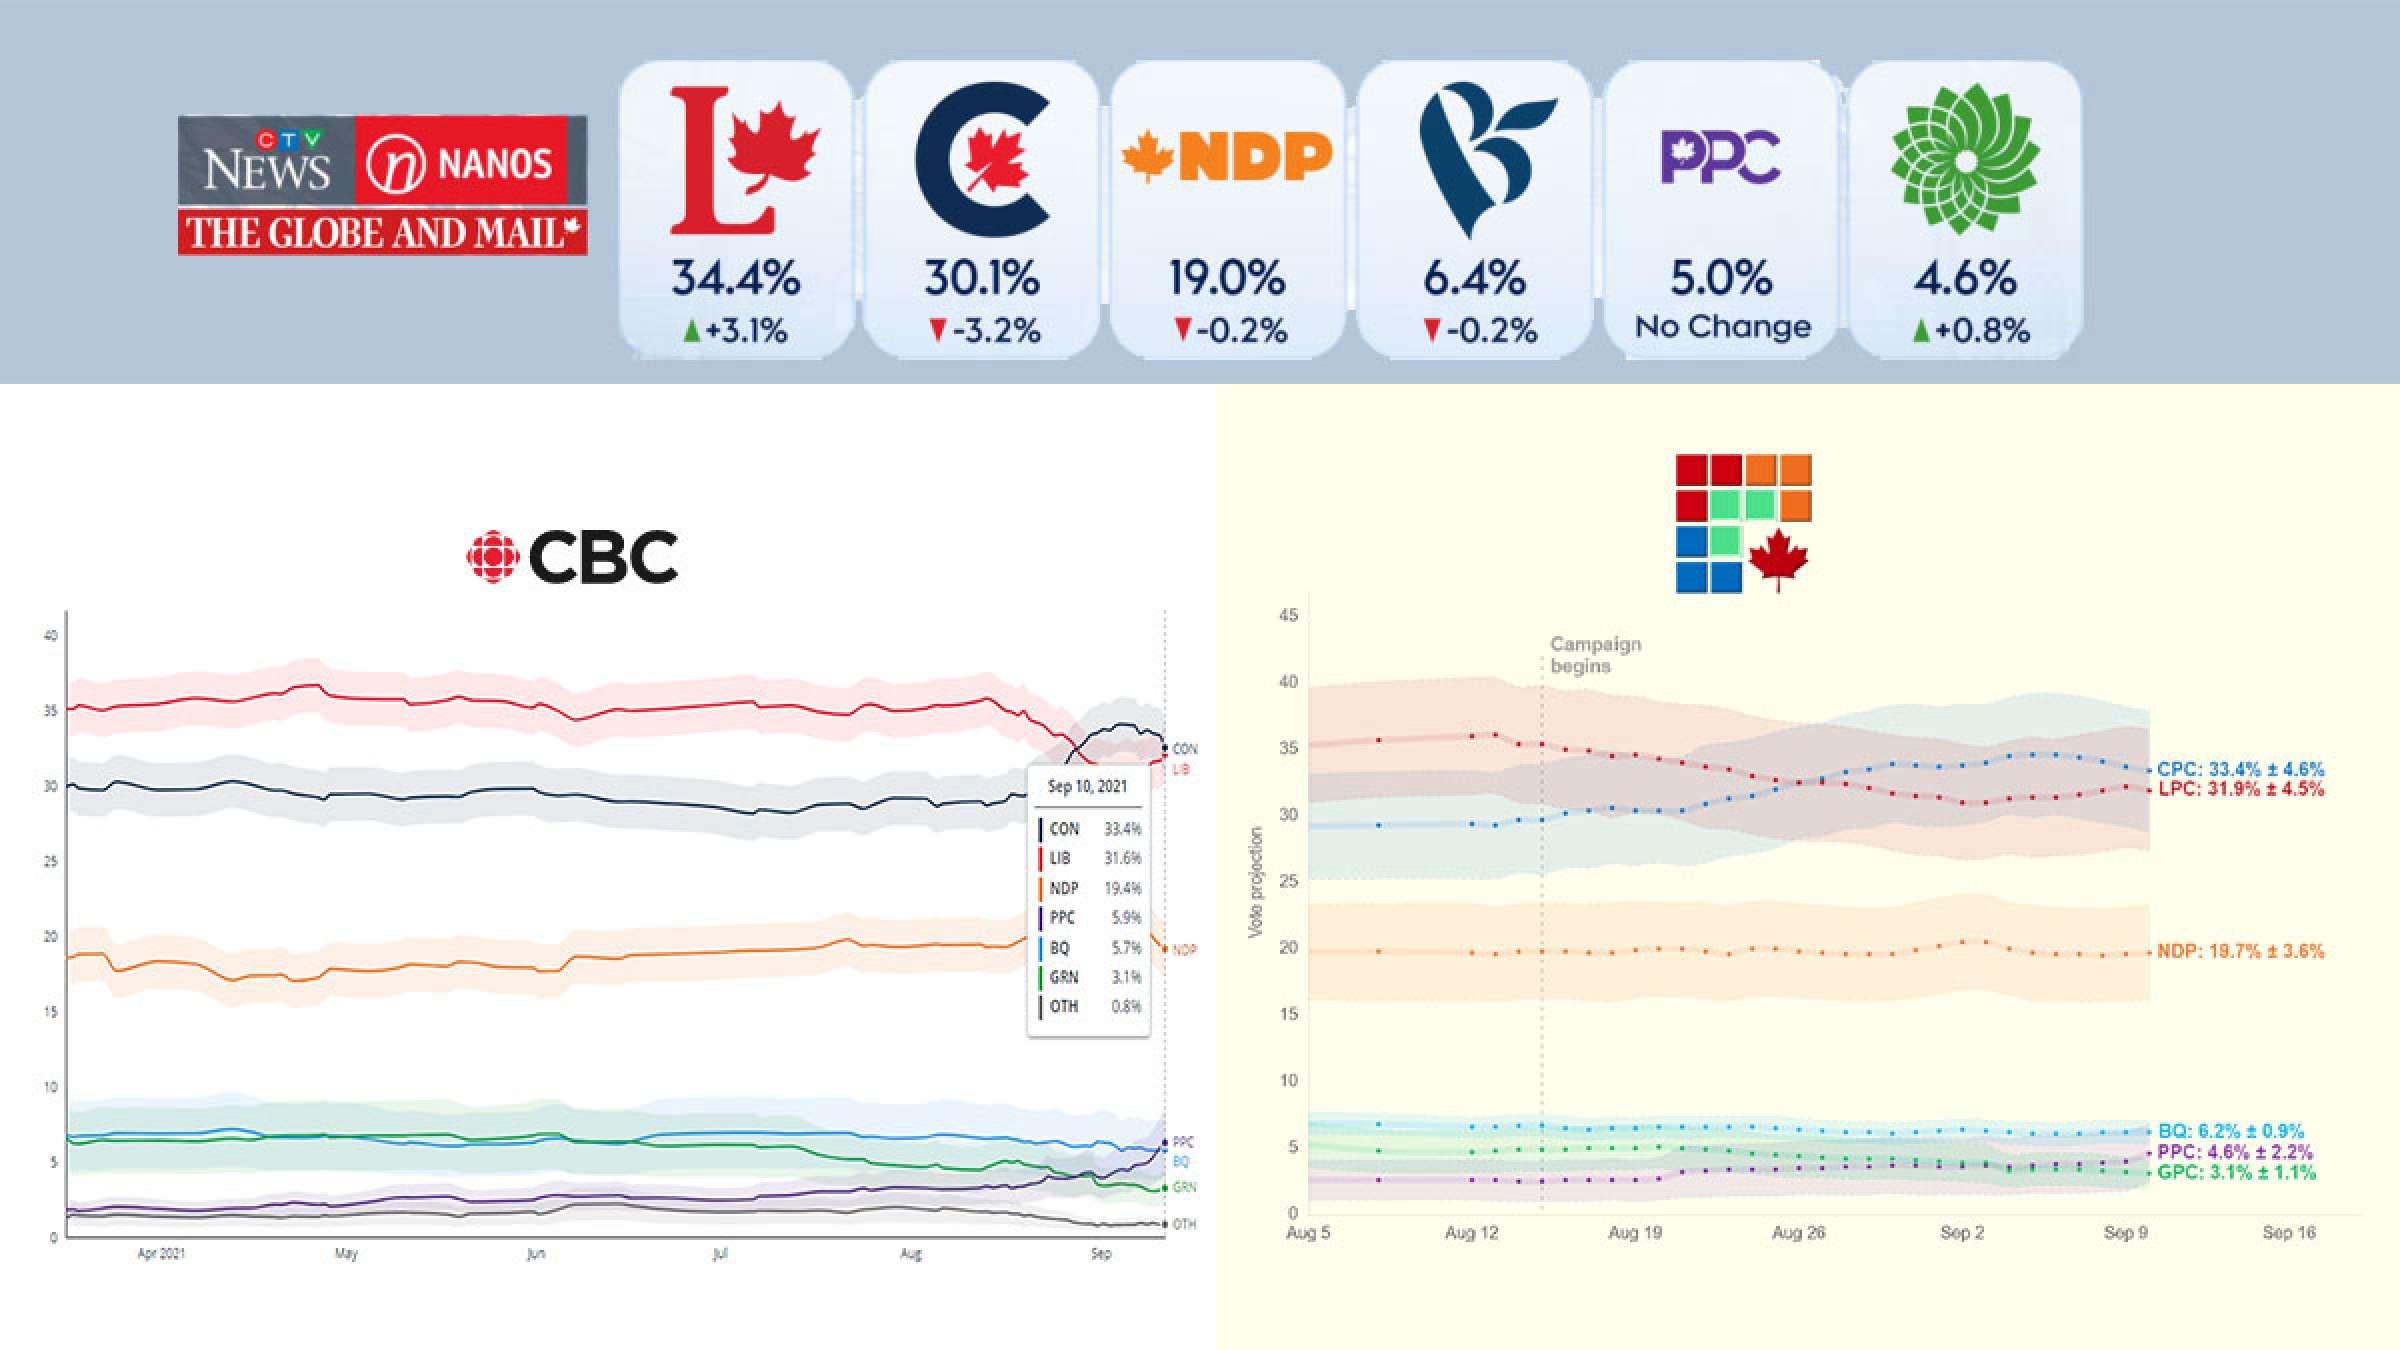 خبر-کانادا-مناظره-ها-باعث-افزایش-حمایت-از-لیبرال-ها-و-جبران-عقب-ماندگی-آنها-از-محافظه-کاران-شد